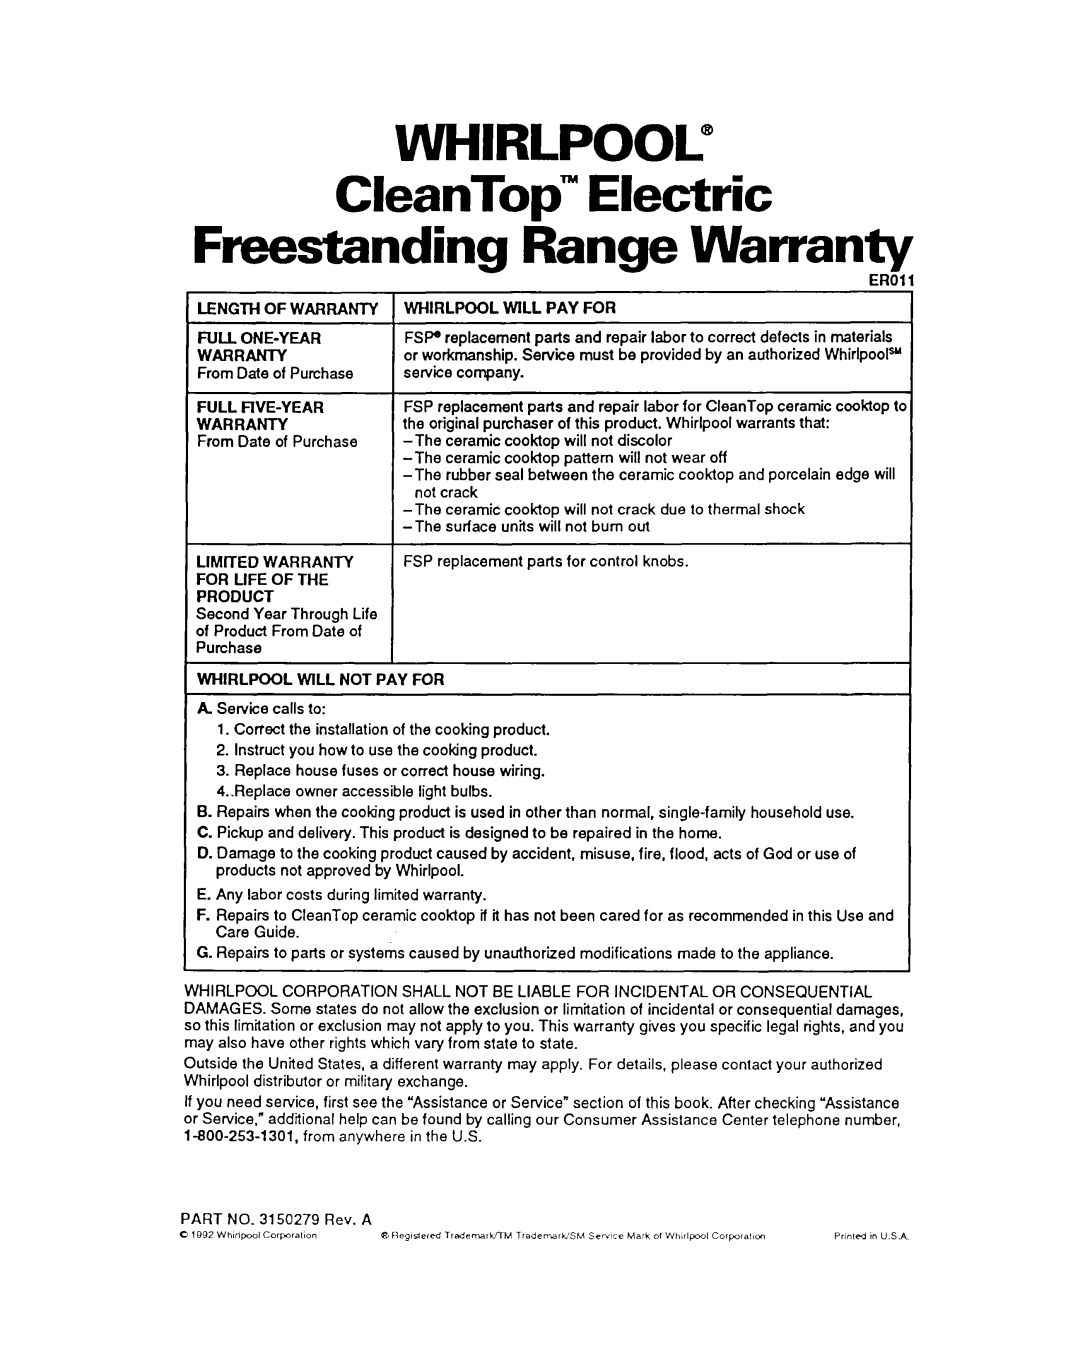 Whirlpool RF376PXY warranty WHIRLPOOL” CleanTop” Electric, Freestanding Range Warranty 